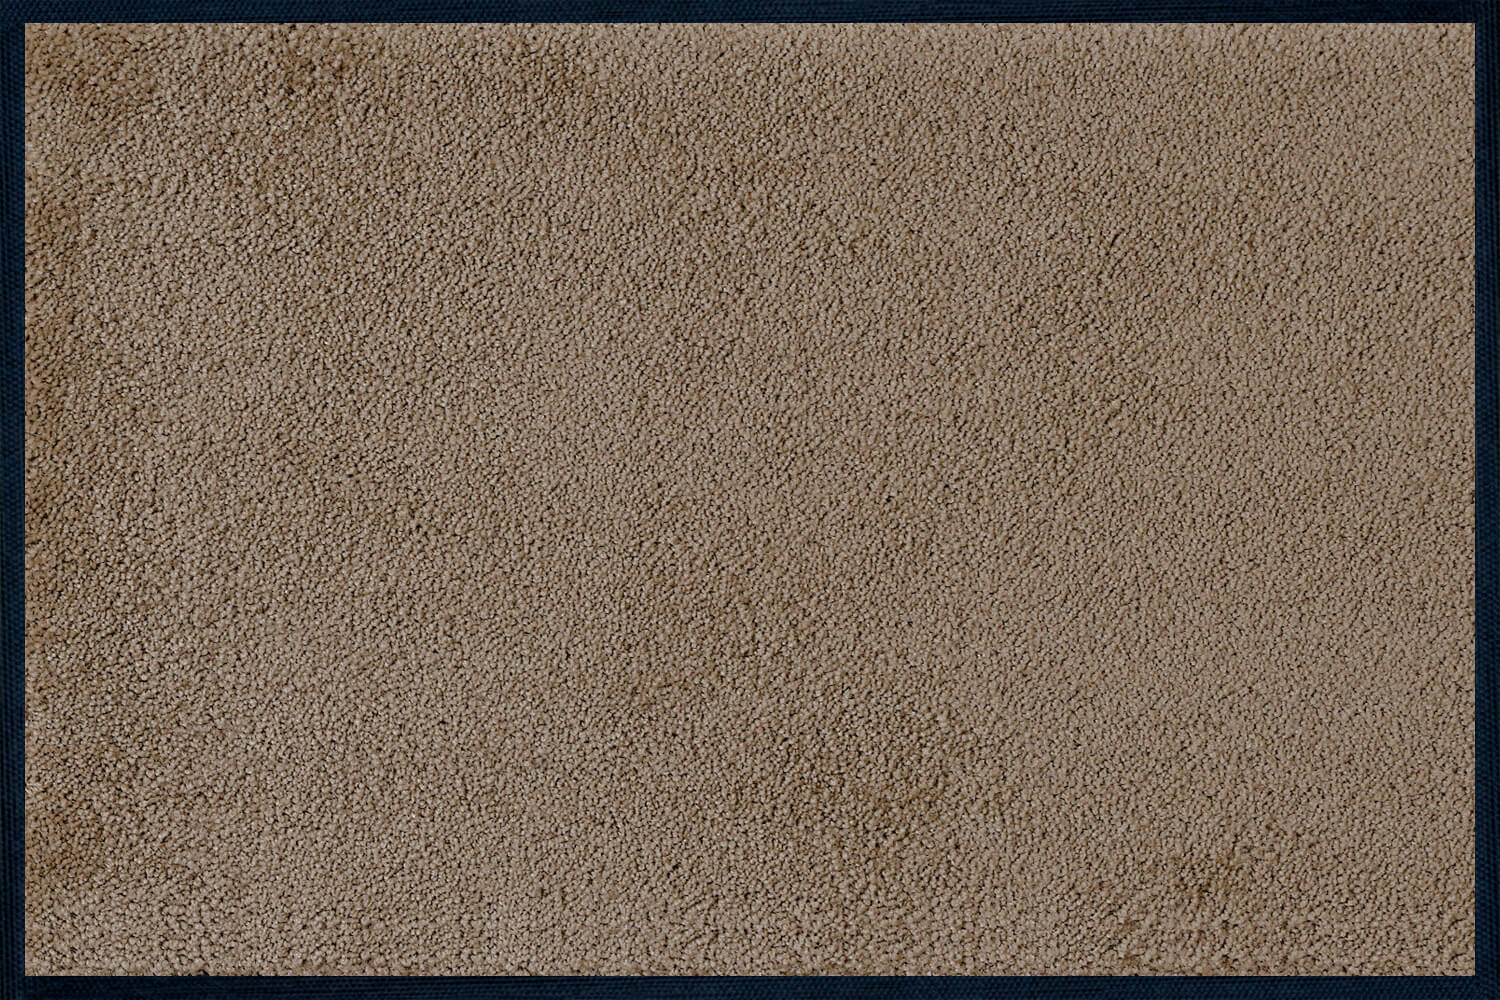 Fußmatte uni Taupe, Wash & Dry einfarbig, 040 x 060 cm, Draufsicht